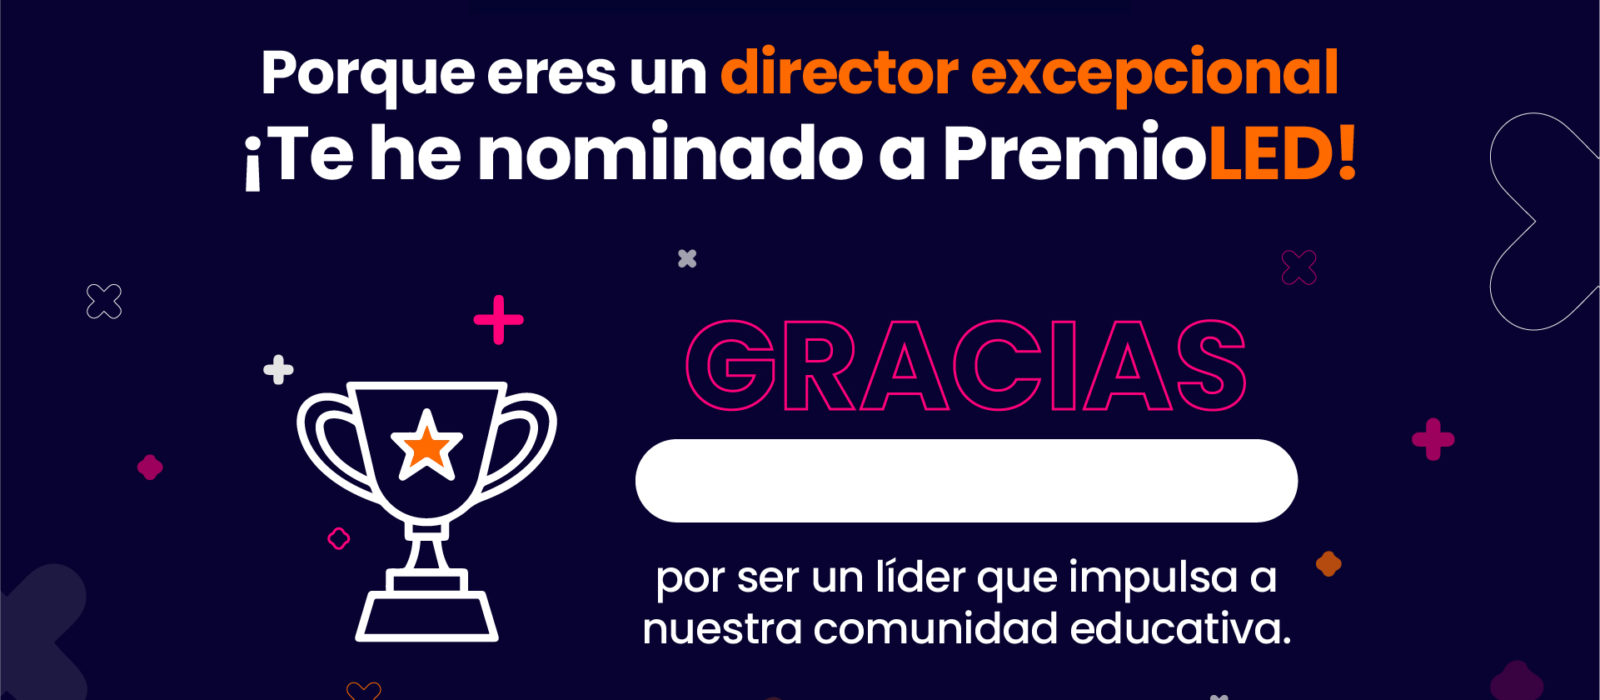 ¿Nominaste a tu director a PremioLED? ¡Felicítalo con este mensaje!